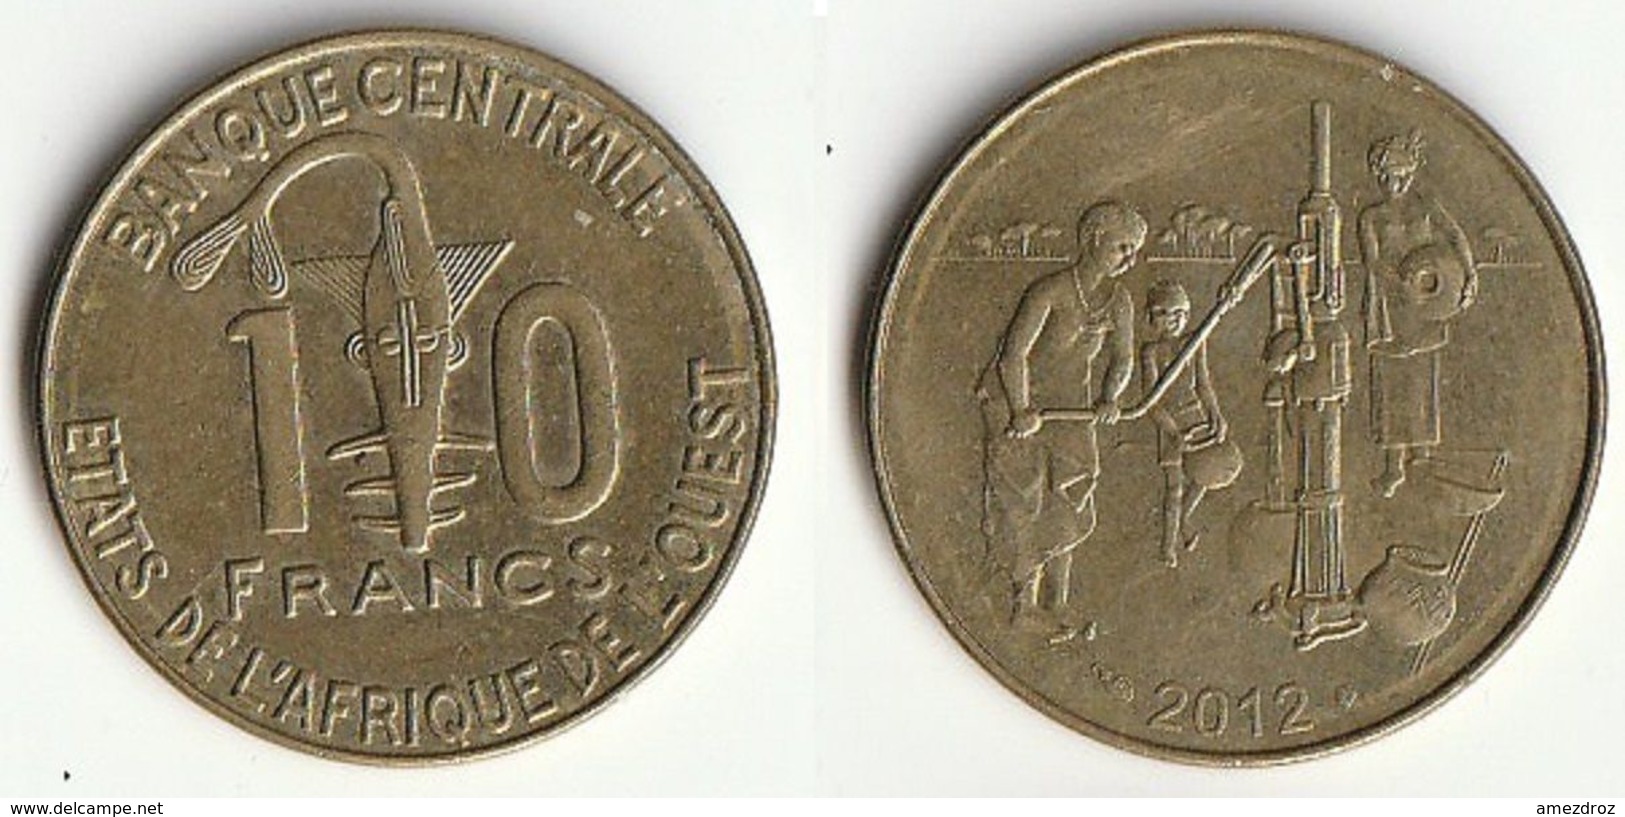 Pièce De 10 Francs CFA XOF 2012 Origine Côte D'Ivoire Afrique De L'Ouest (v) - Elfenbeinküste